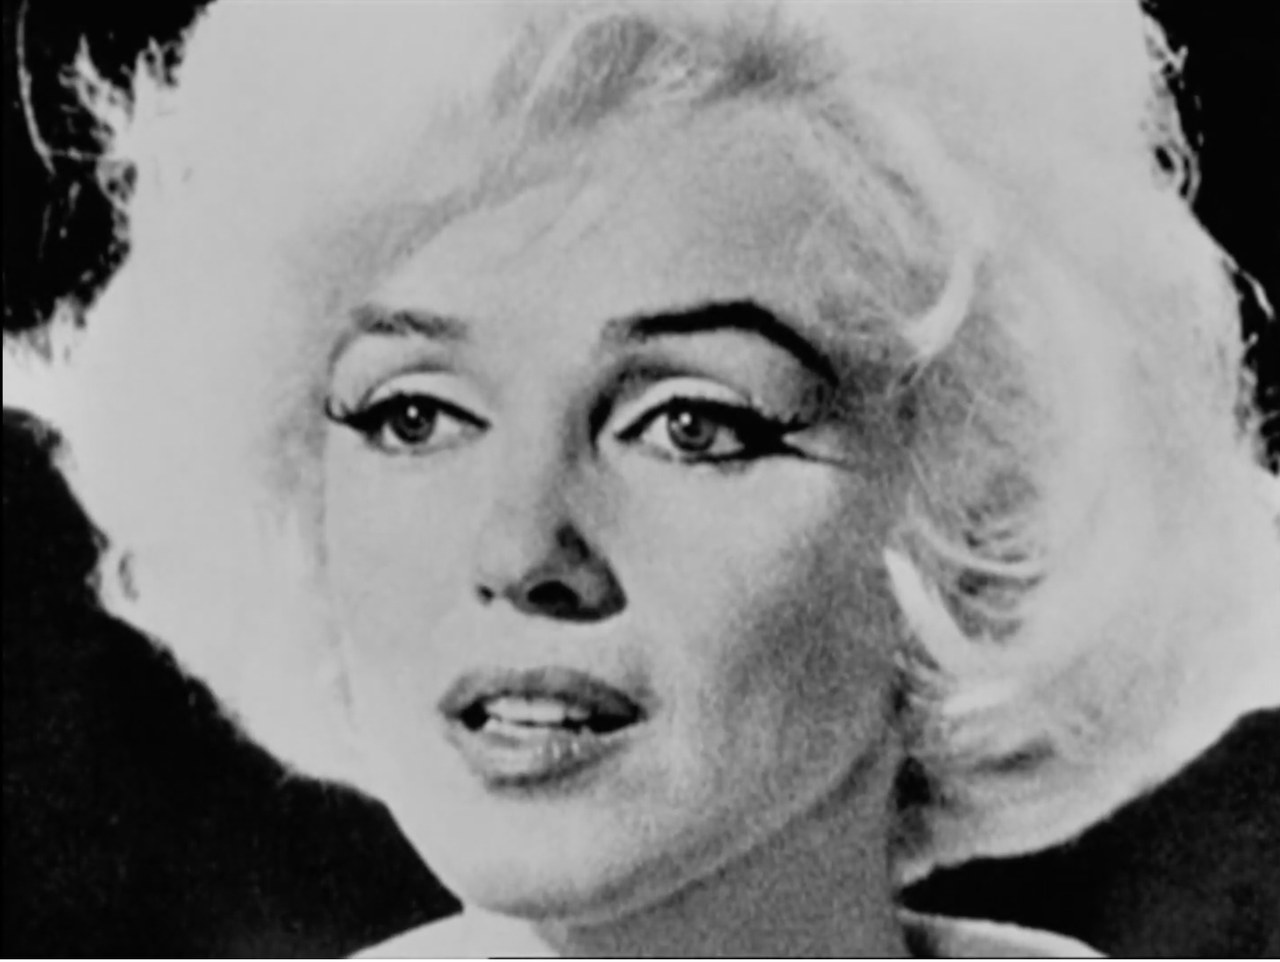  Fotogramma tratto da La rabbia (1963) di Pier Paolo Pasolini